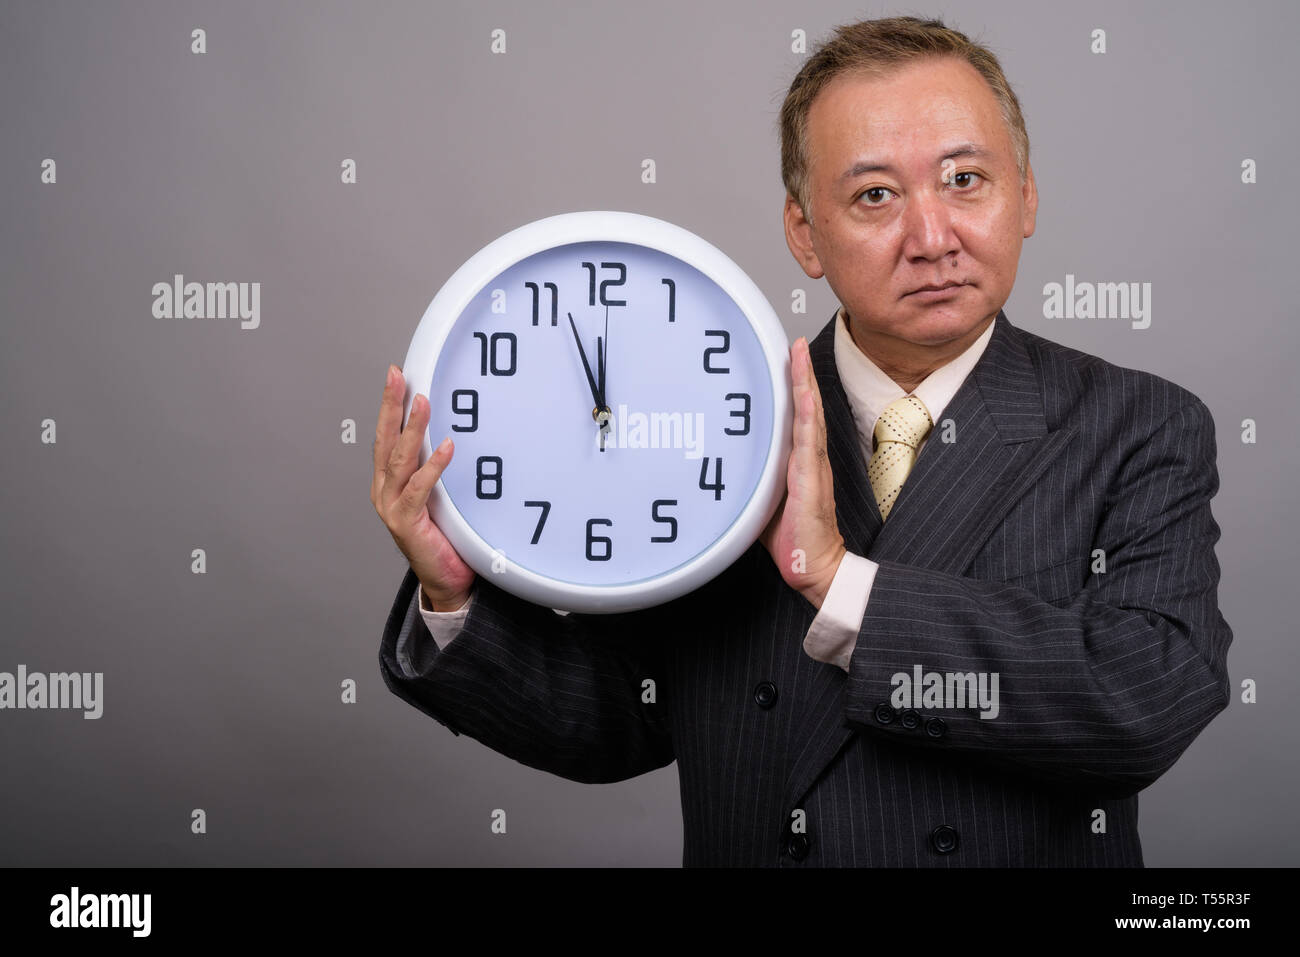 Portrait of mature Asian businessman contre l'arrière-plan gris Banque D'Images